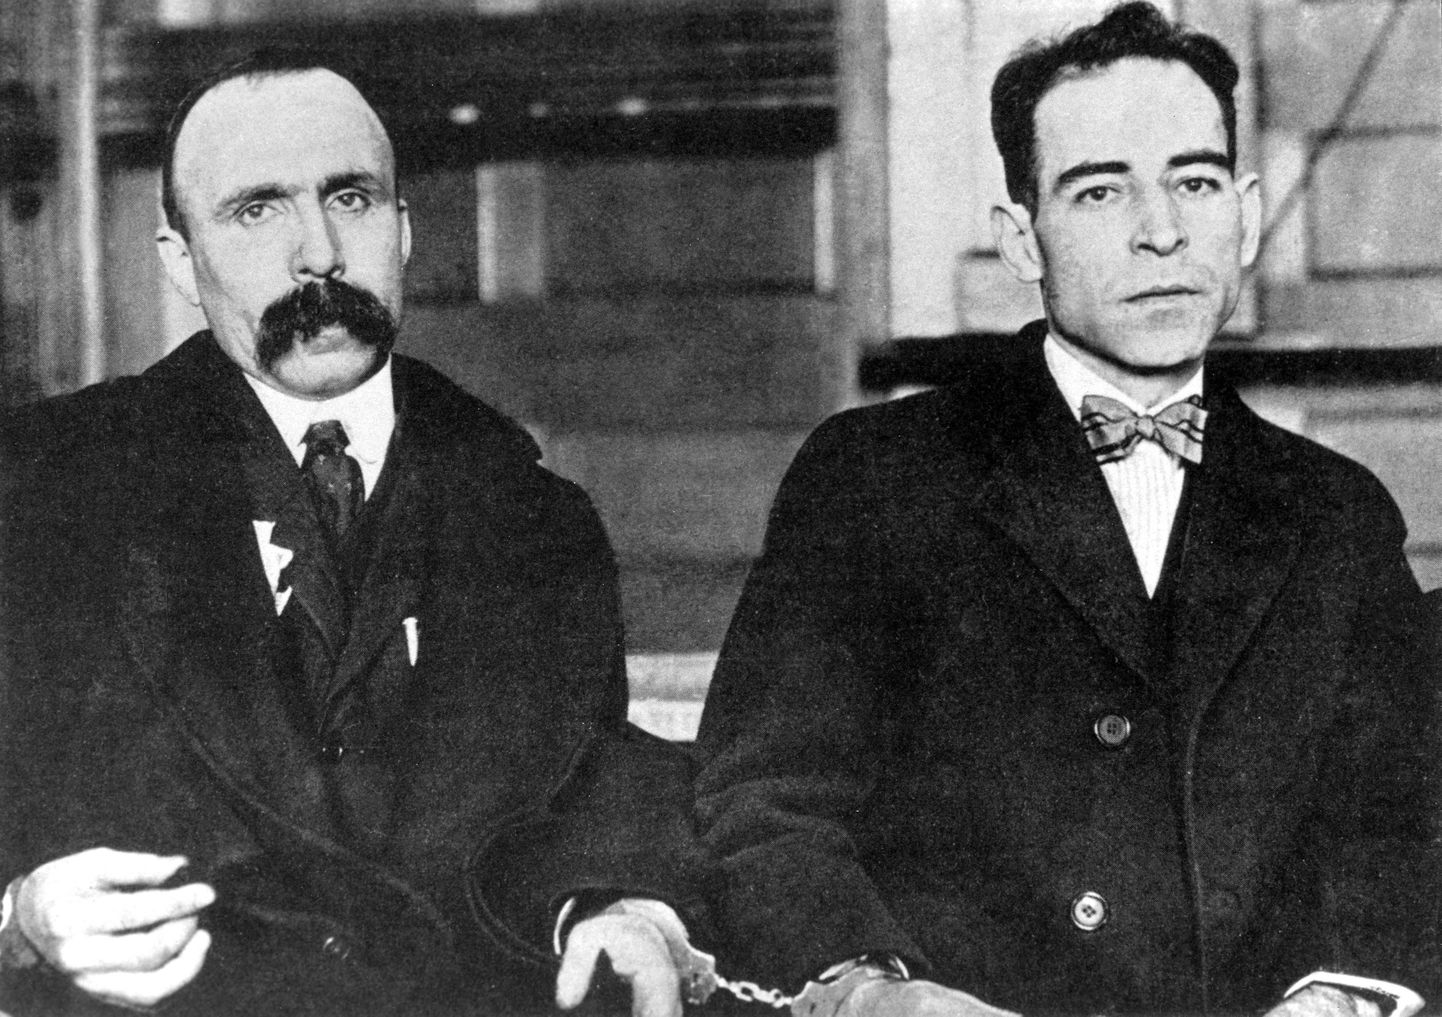 Mõrva eest surma mõistetud anarhistid Nicola Sacco (paremal) 1897 - 1927 ja Bartolomeo Vanzetti (1888-1927).